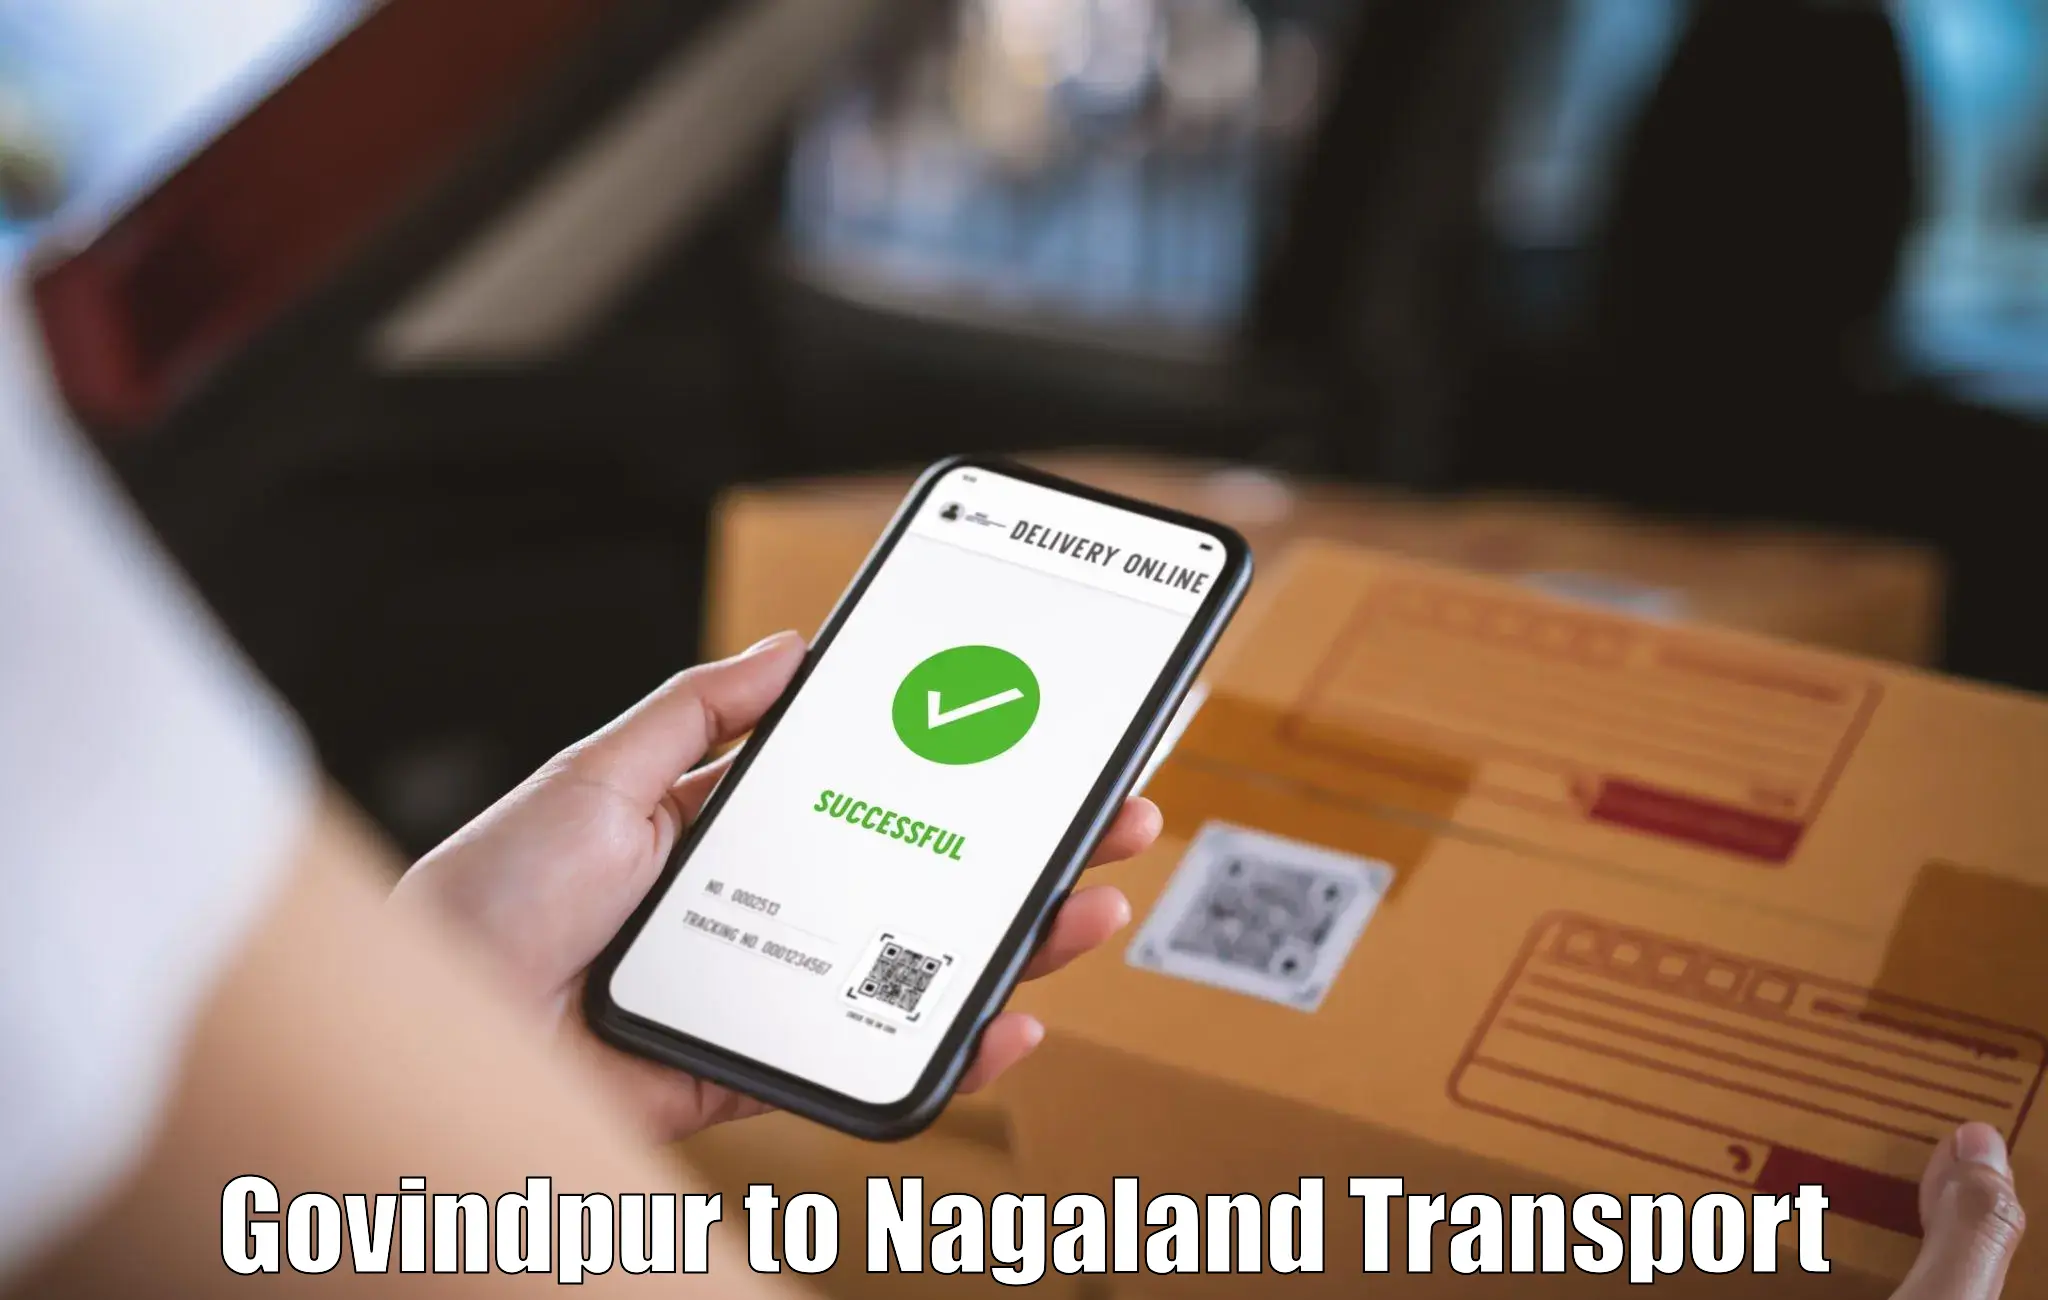 Transport shared services Govindpur to Nagaland